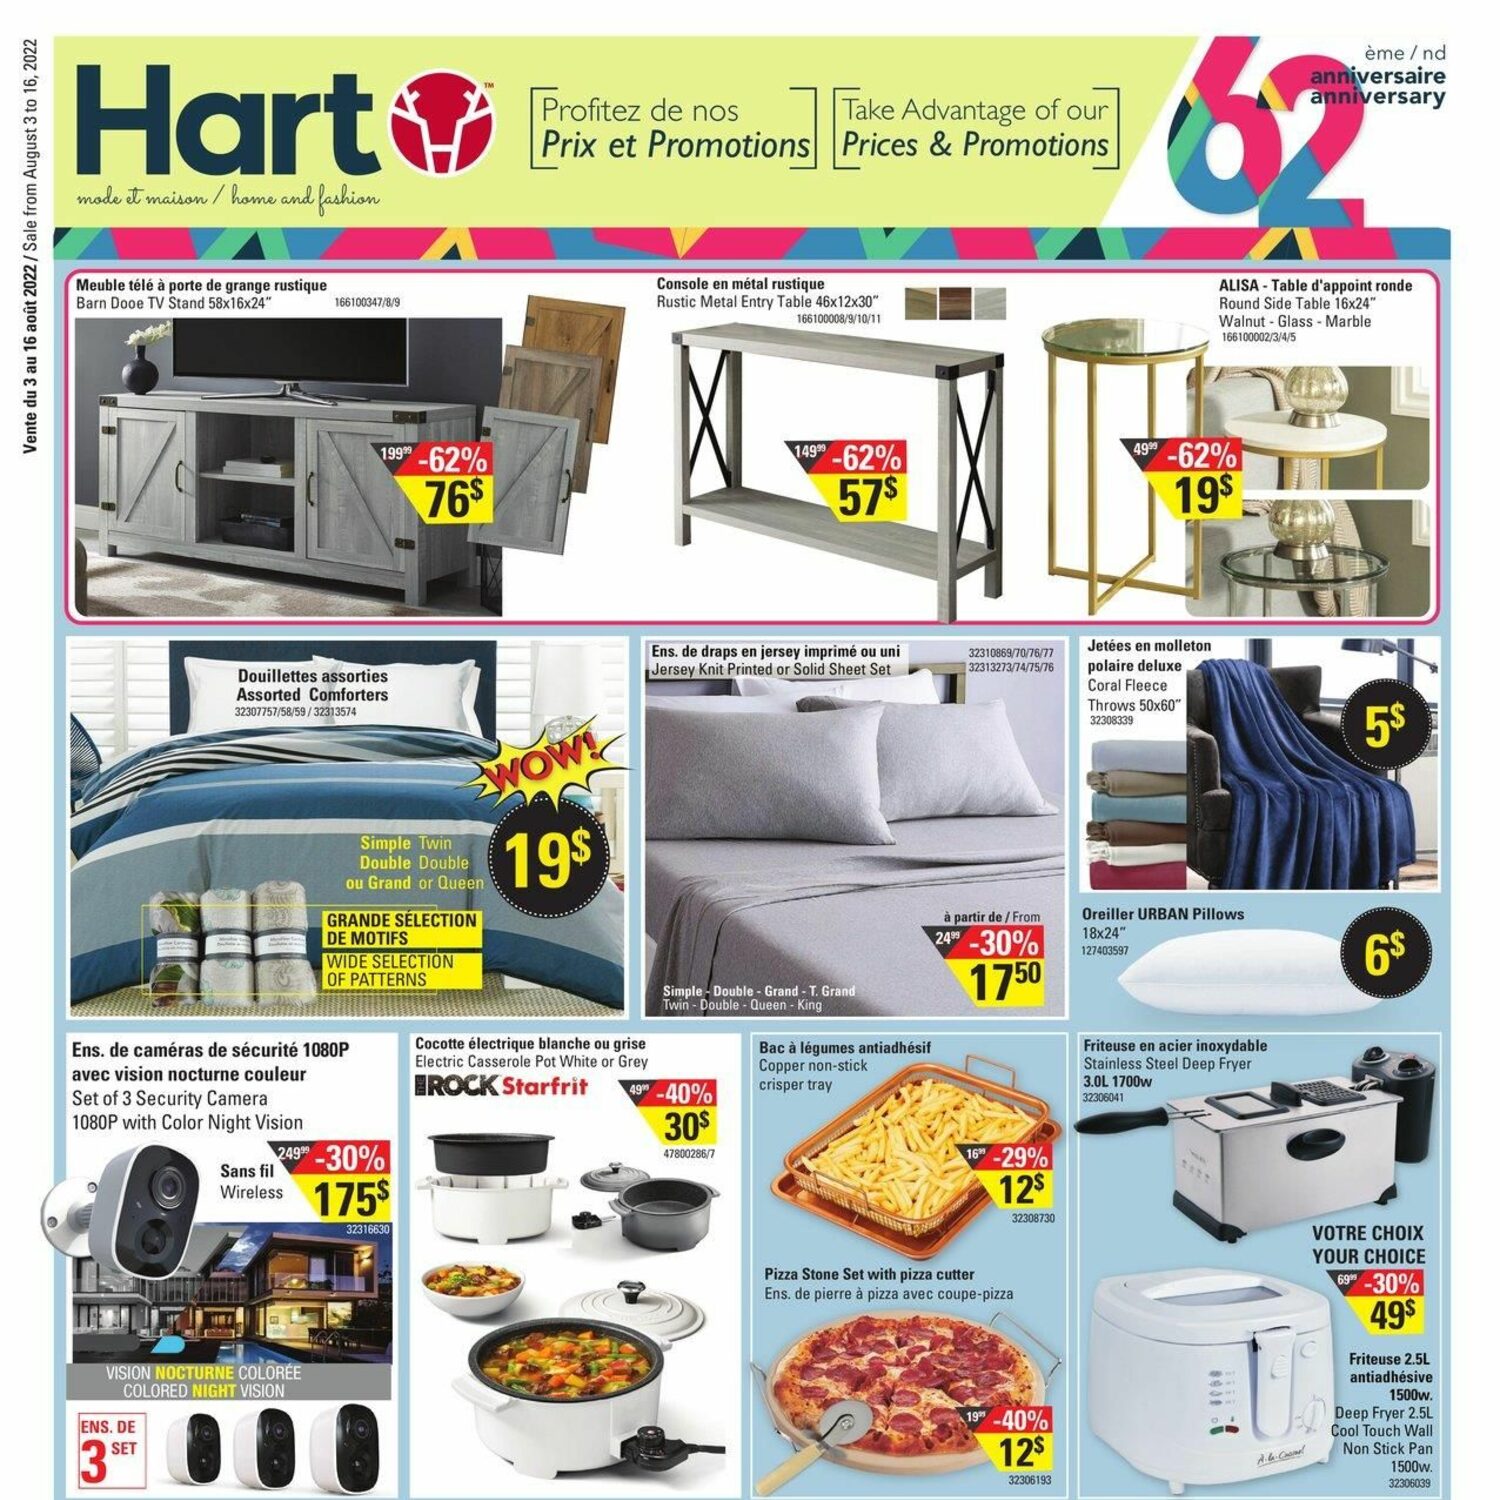 hart-stores-weekly-flyer-2-weeks-of-savings-62nd-anniversary-sale